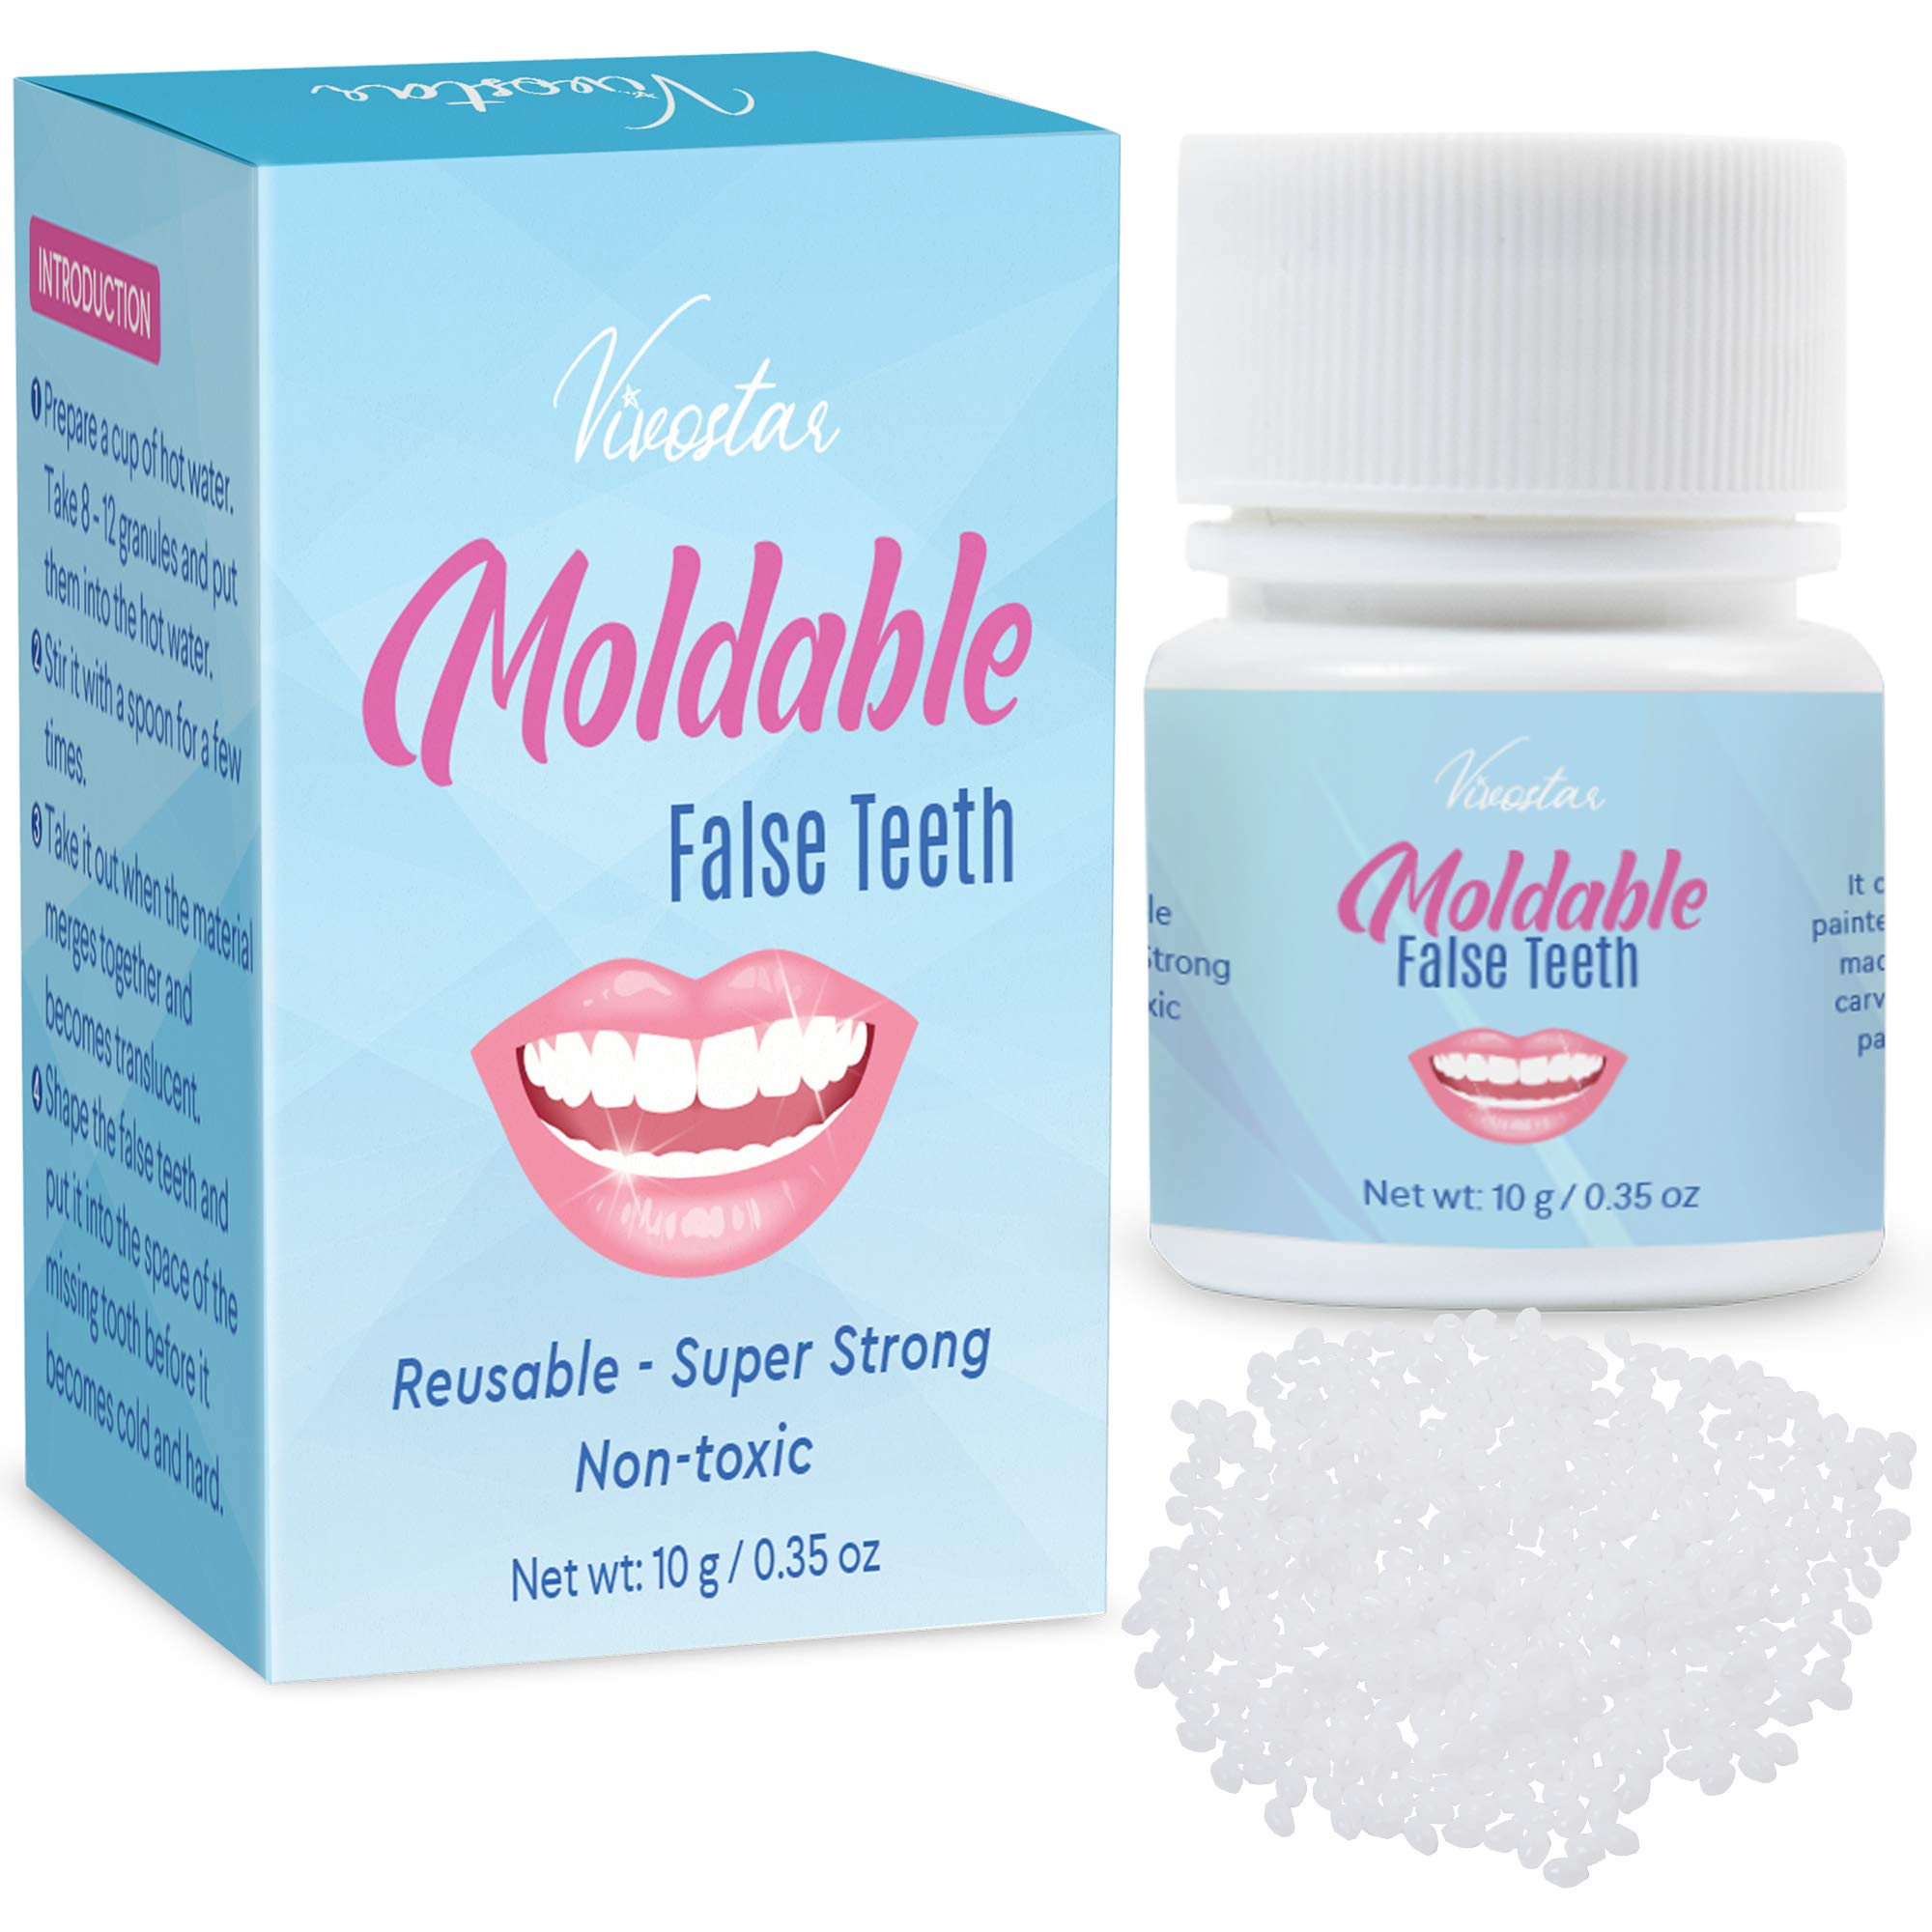 Moldable False Teeth